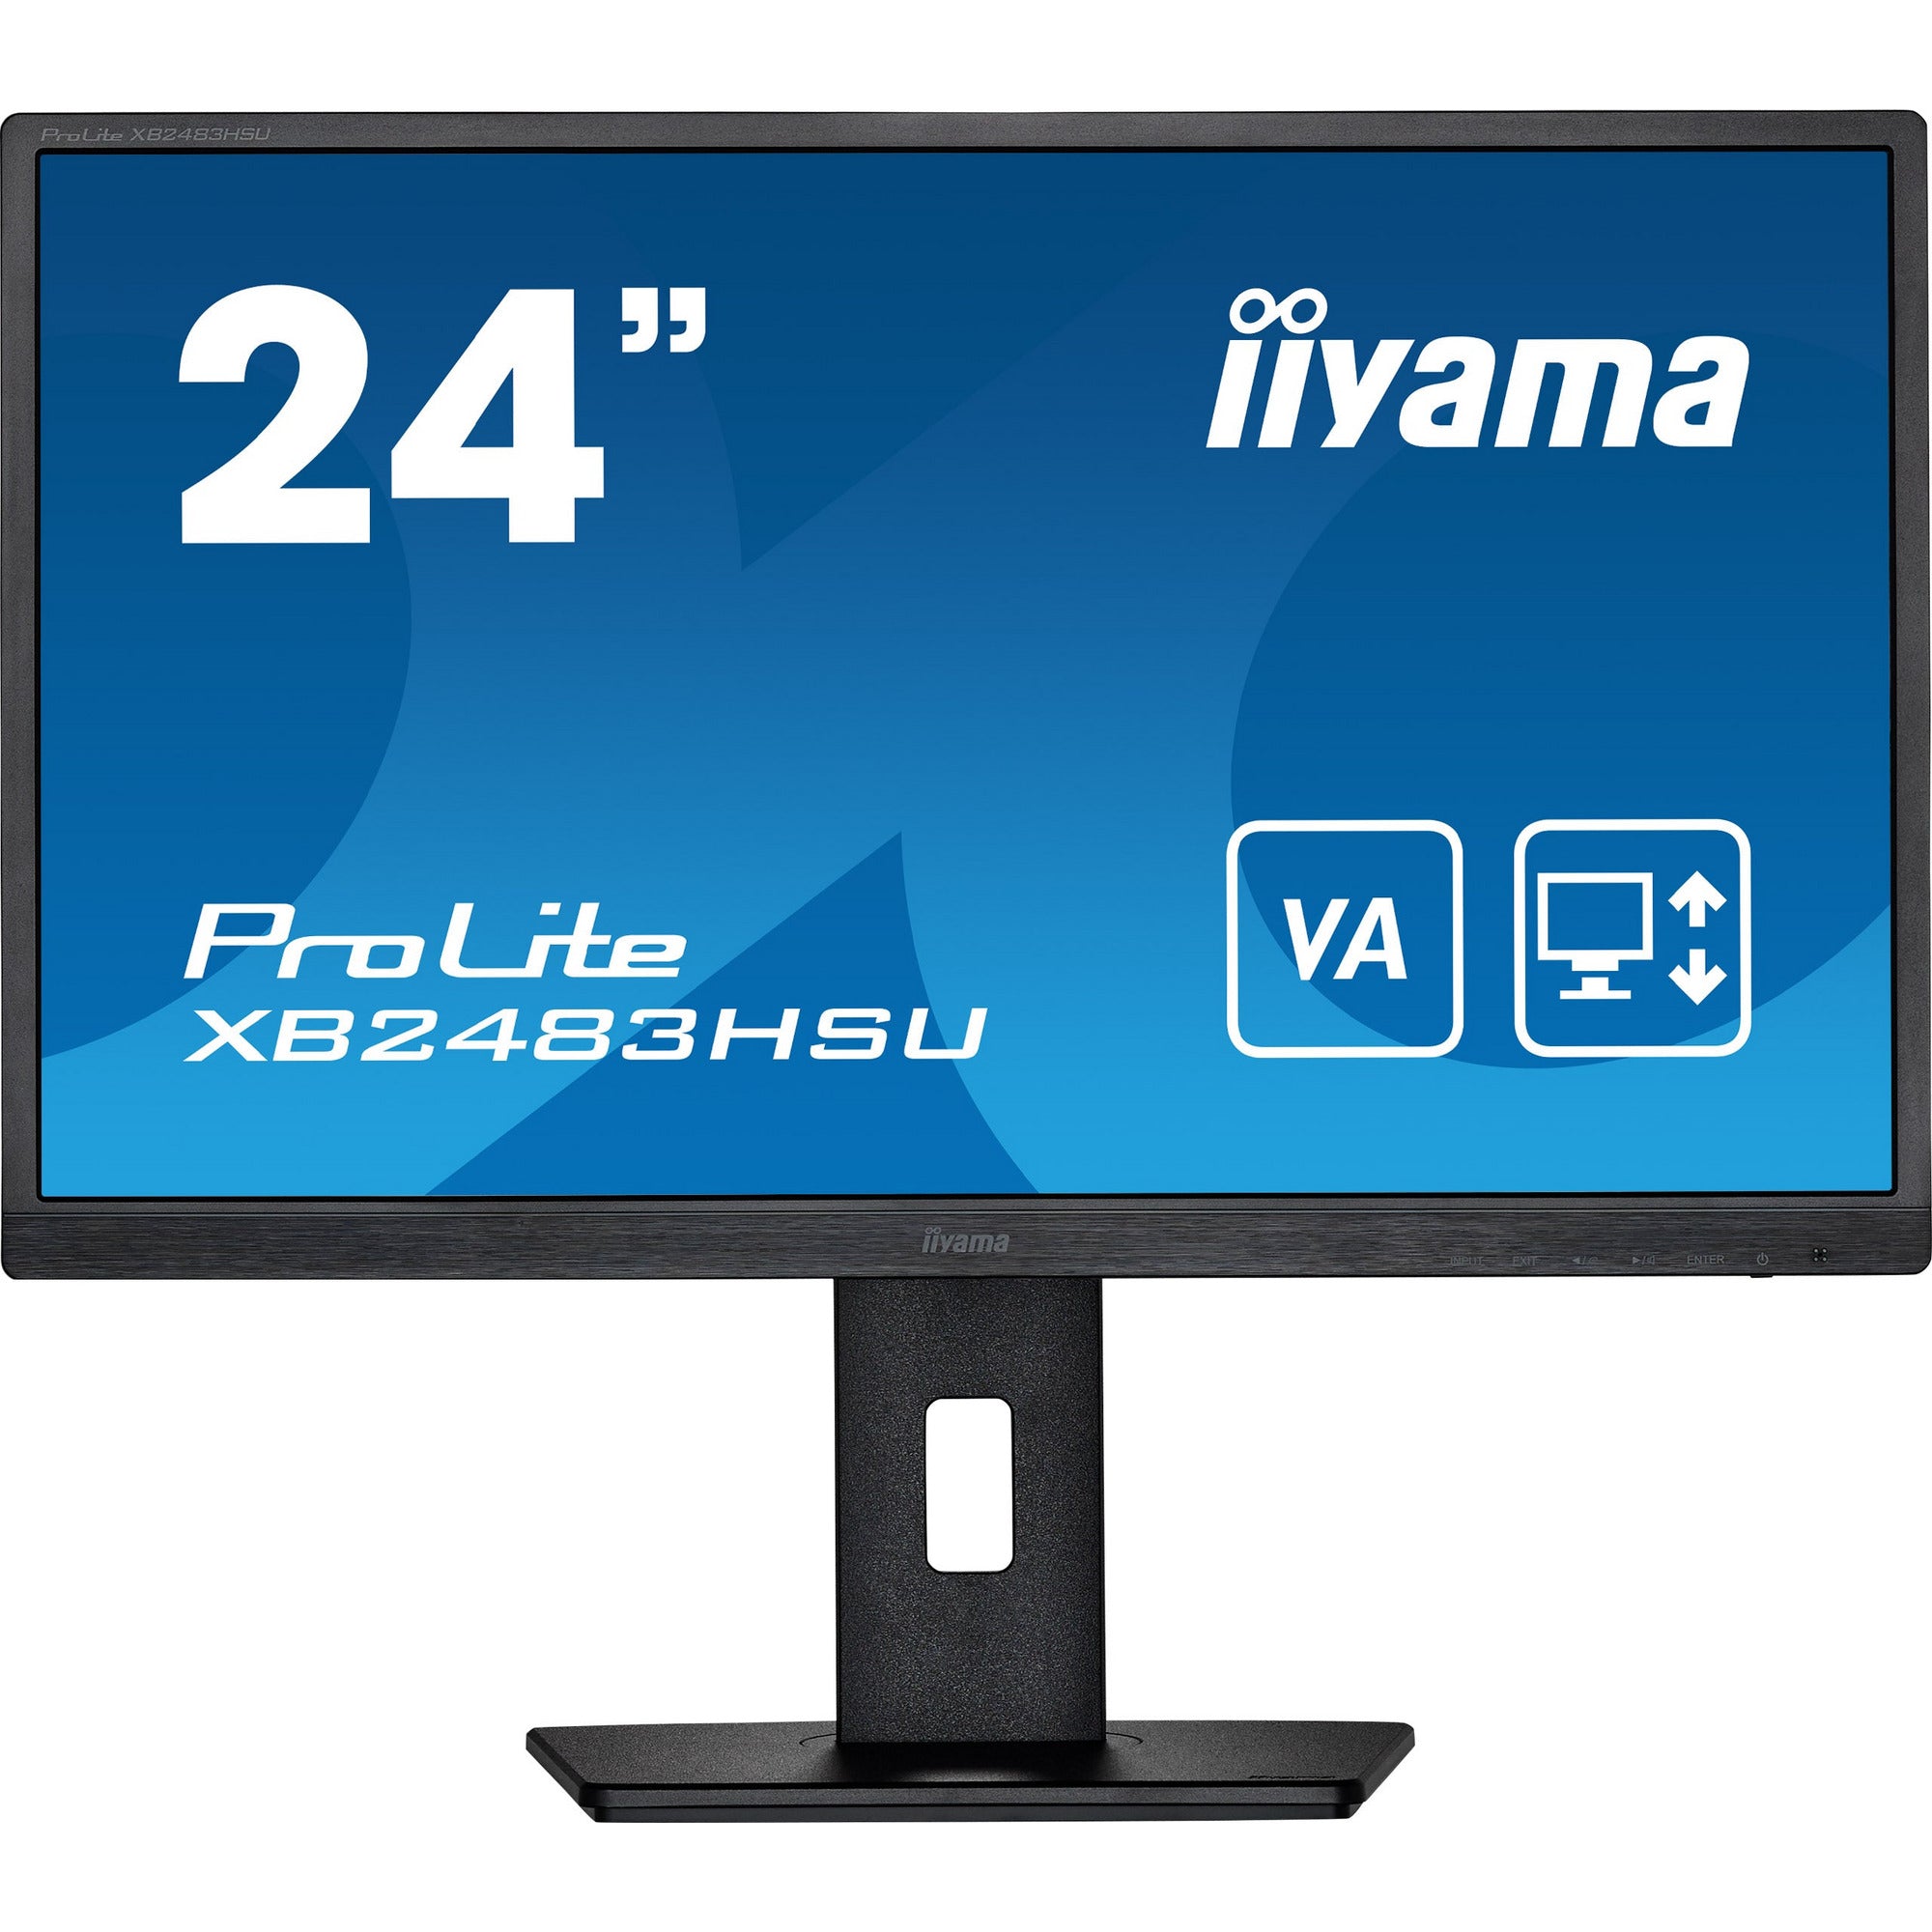 iiyama ProLite XB2483HSU-B5 24" LED Display with Height Adjust Stand